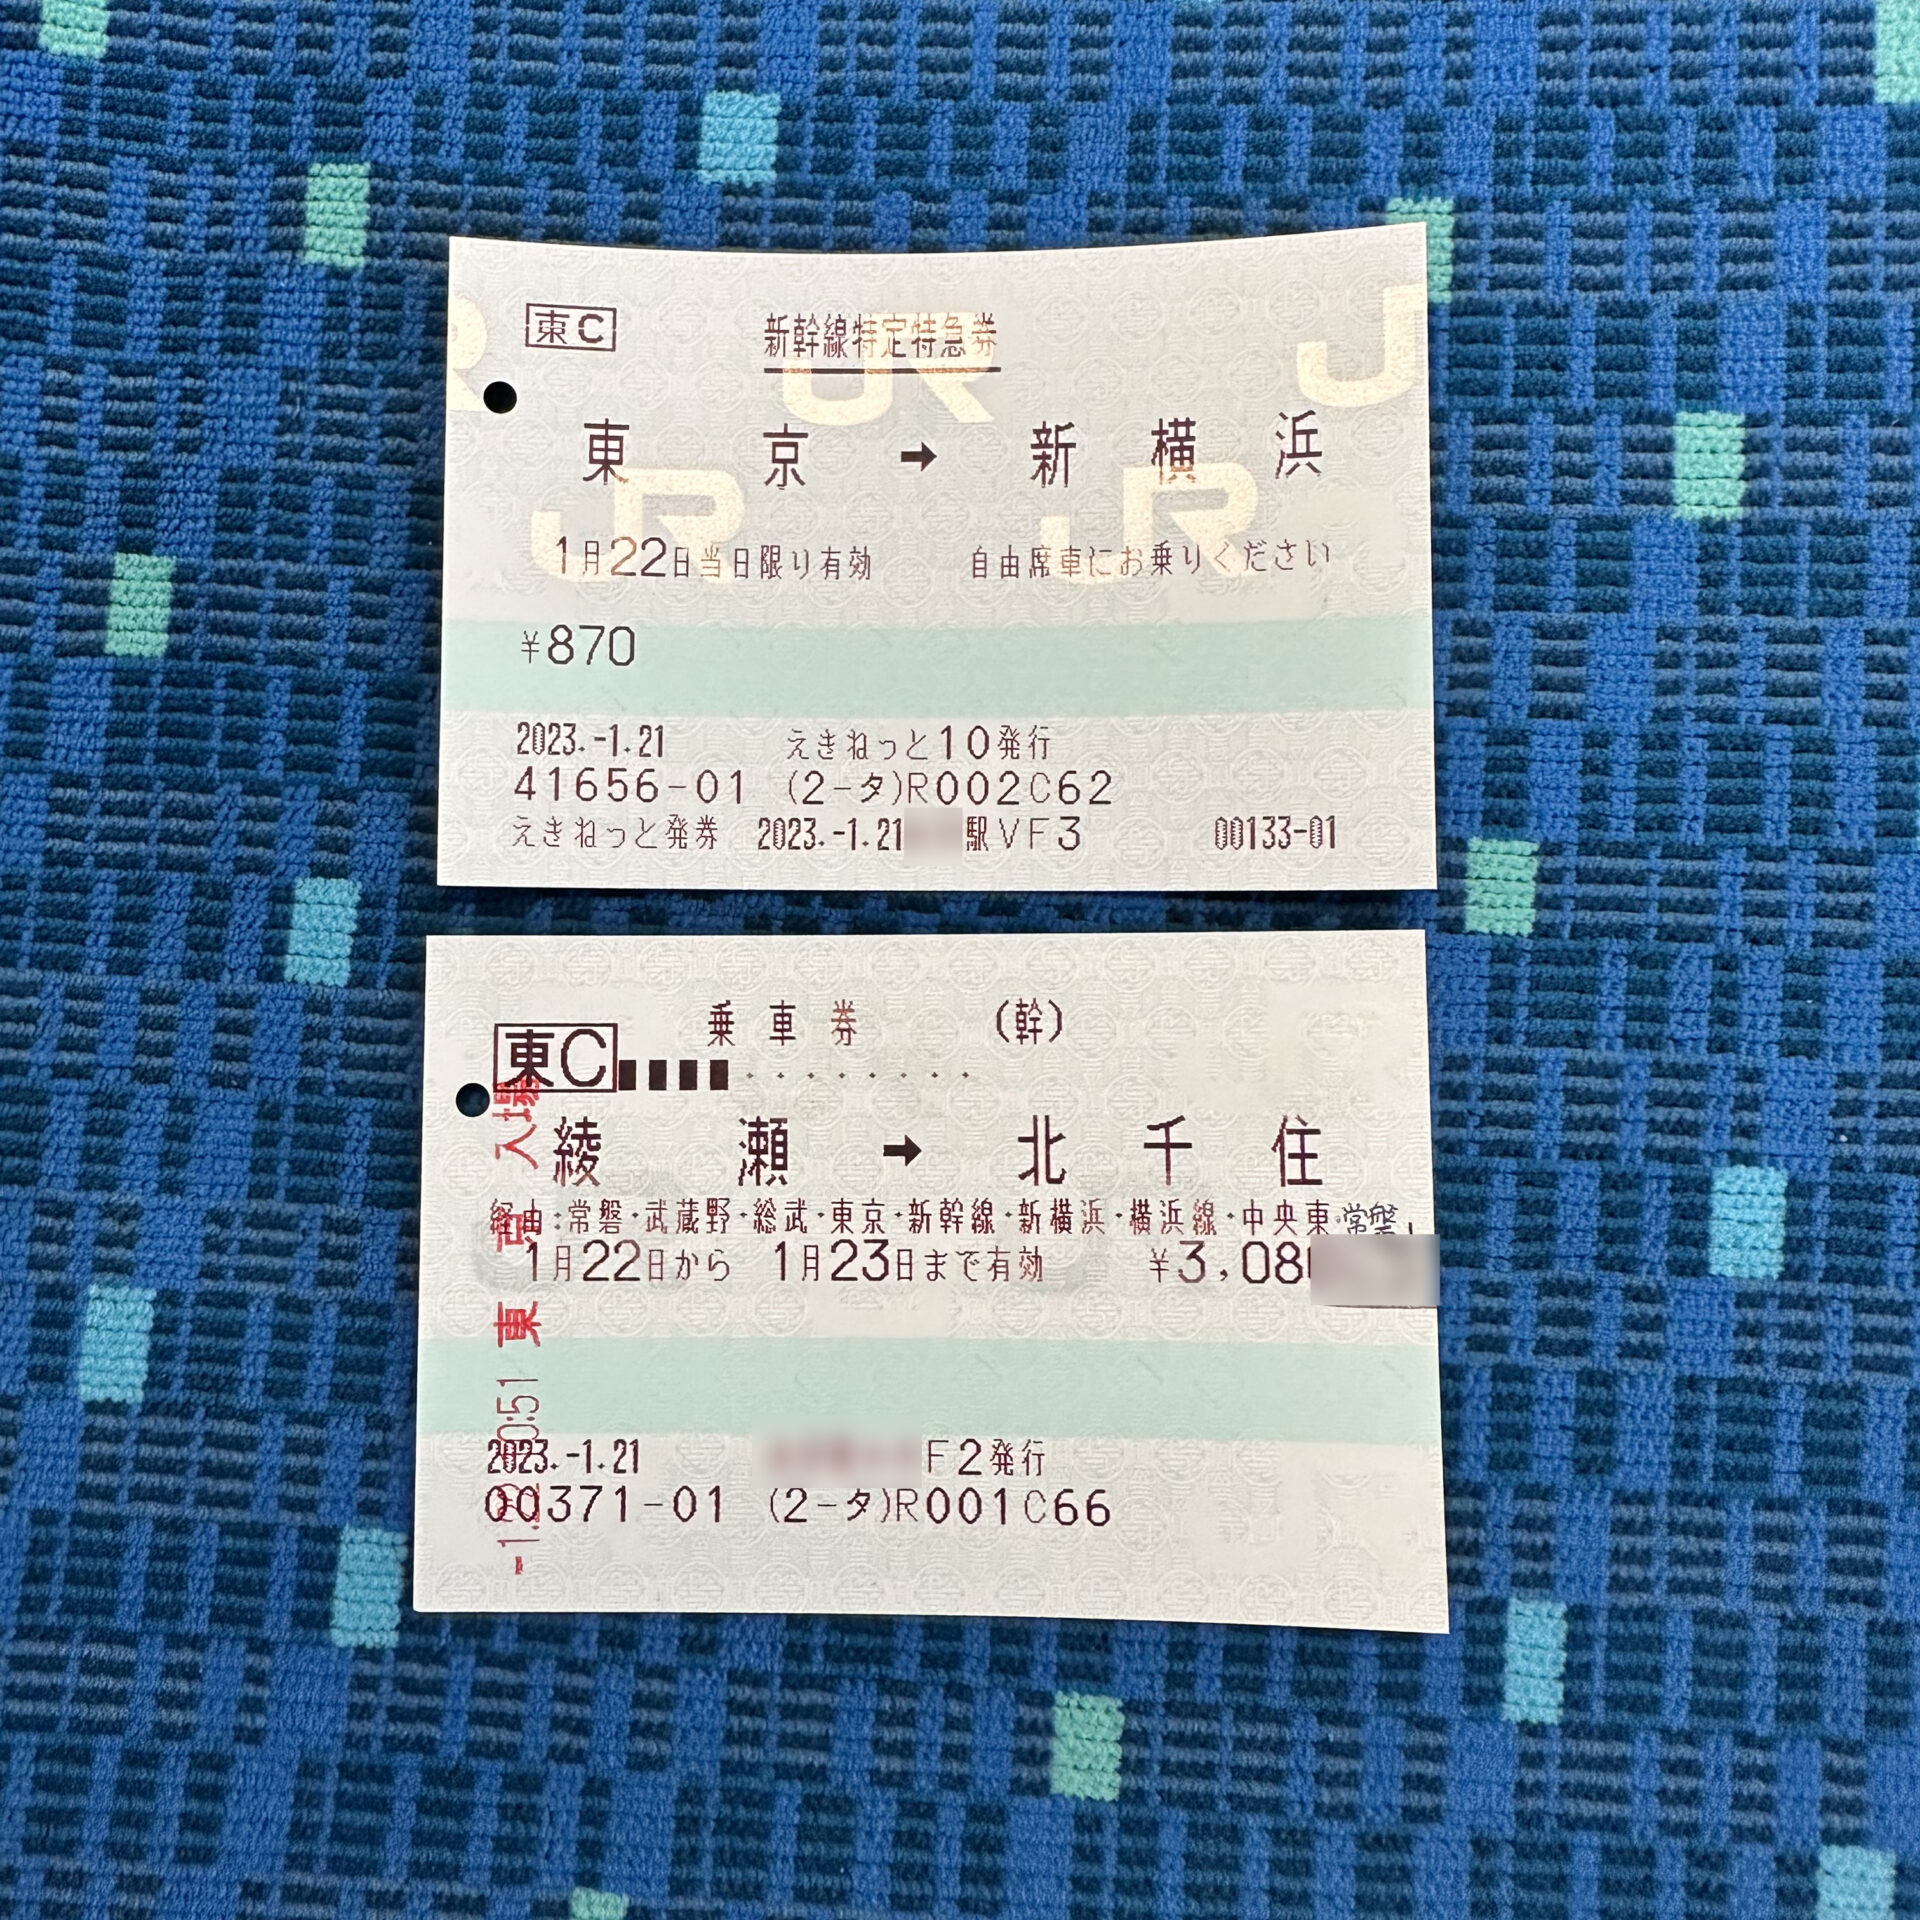 東海道新幹線特定特急券と乗車券